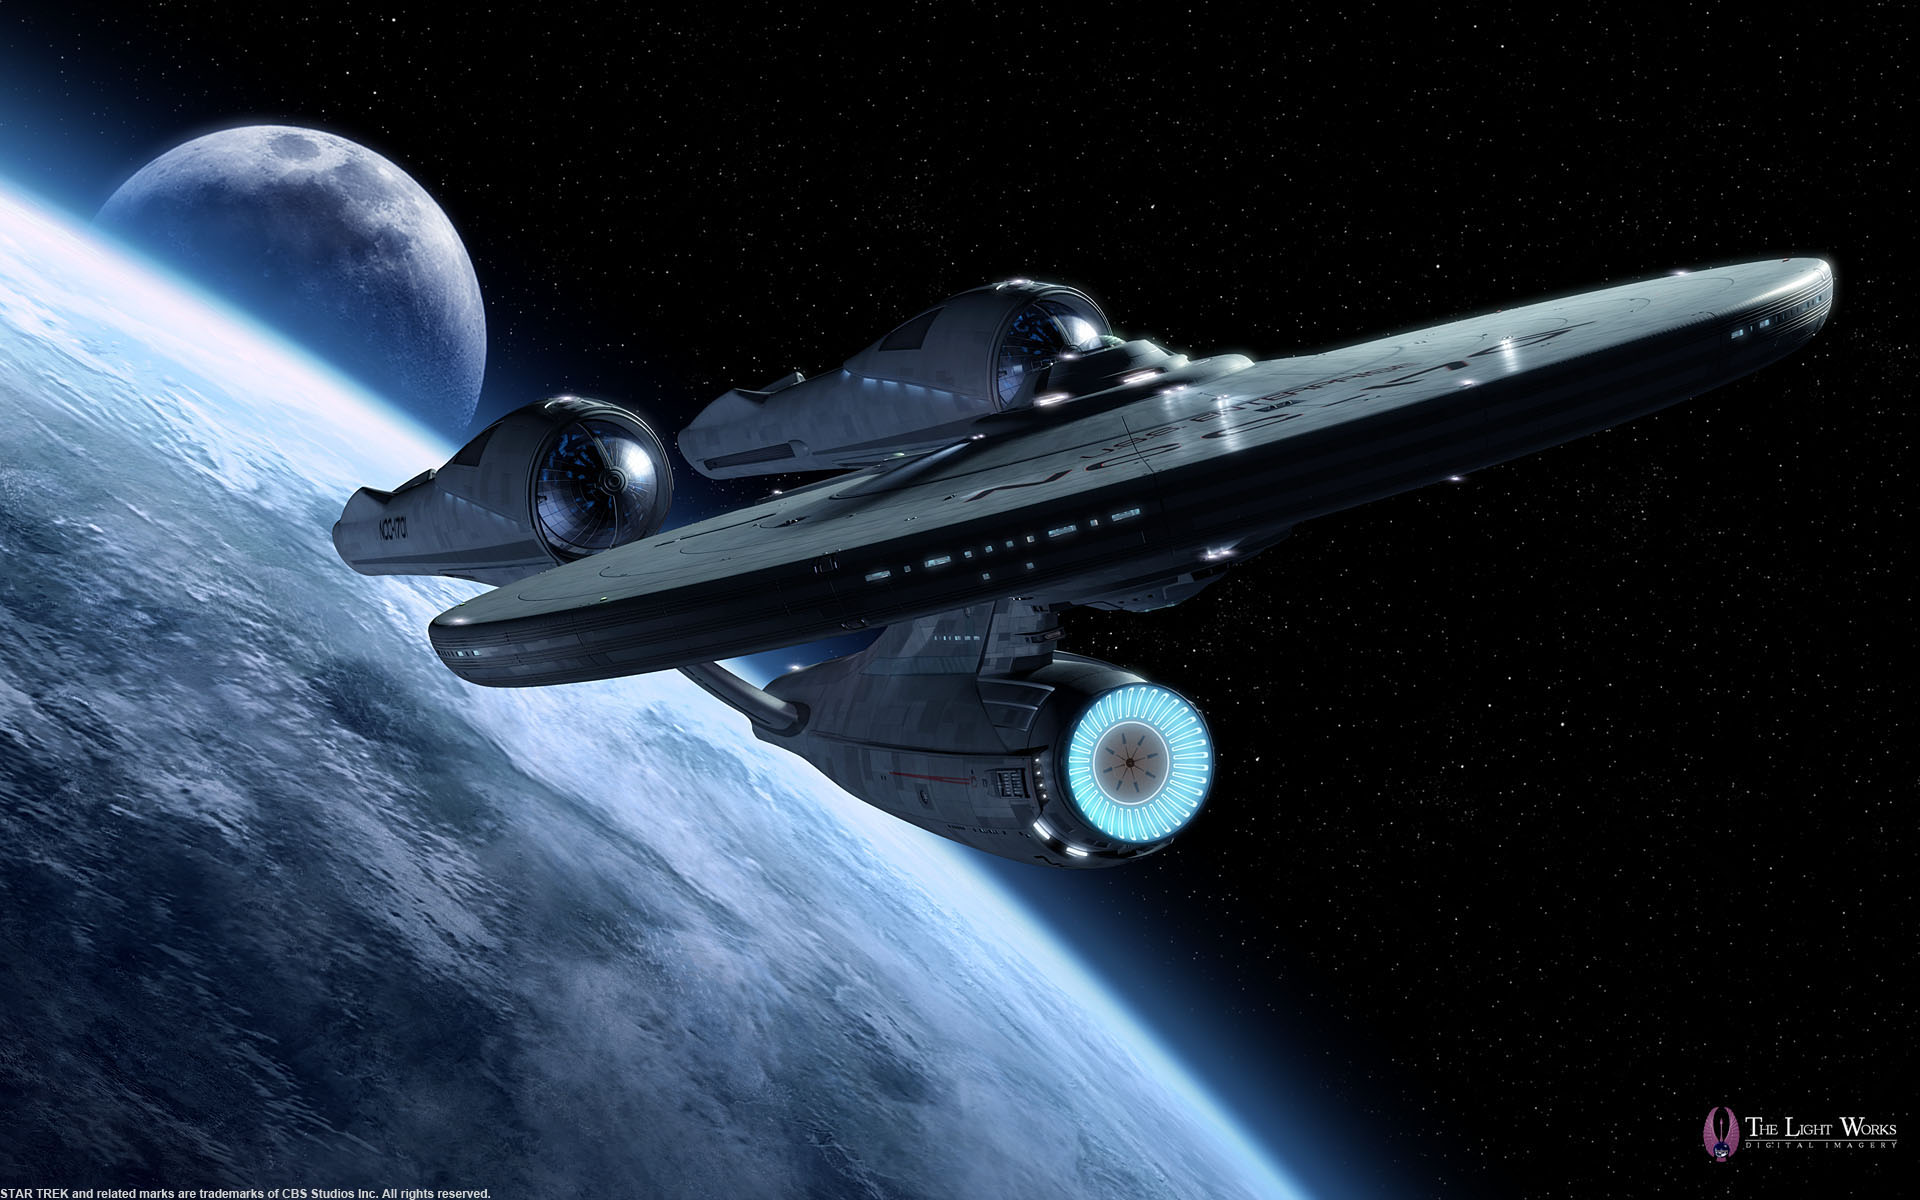 U.S.S. Enterprise der Kelvin-Zeitlinie (Bild: Nutzung mit freundlicher Erlaubnis von The Light Works, Tobias Richter)